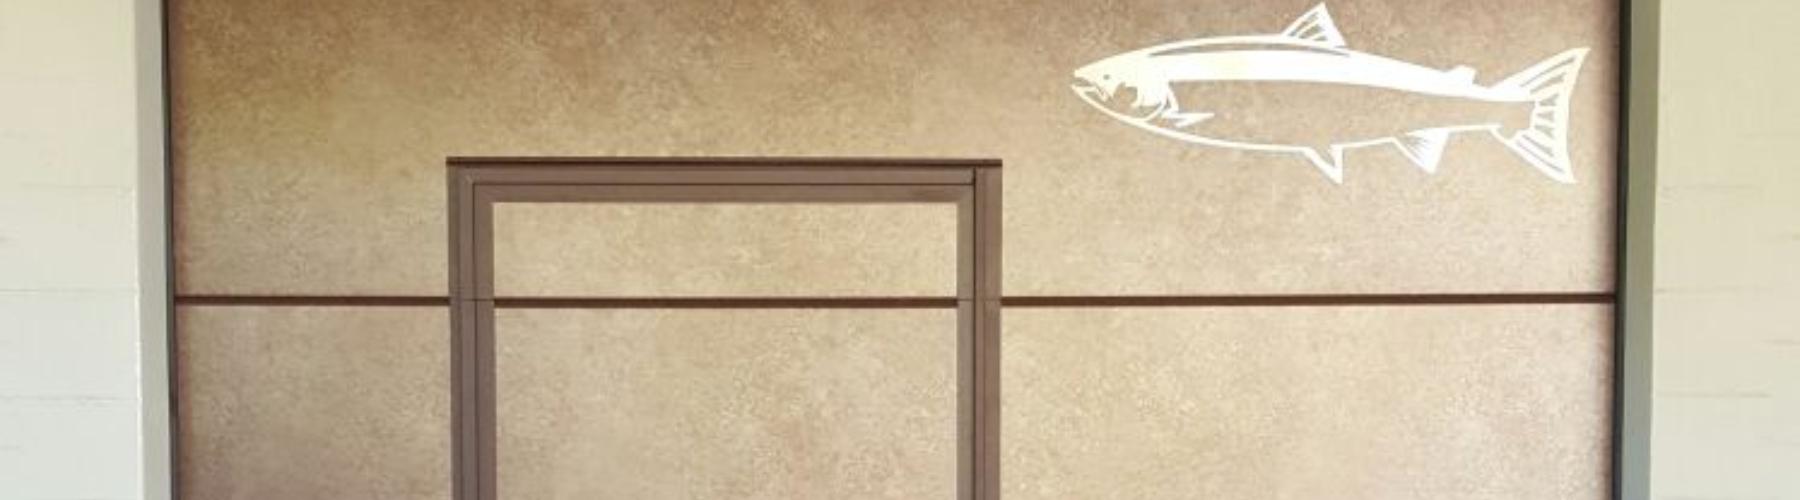 Nuova porta sezionale con design personalizzata installata a Colico: Immagine Header